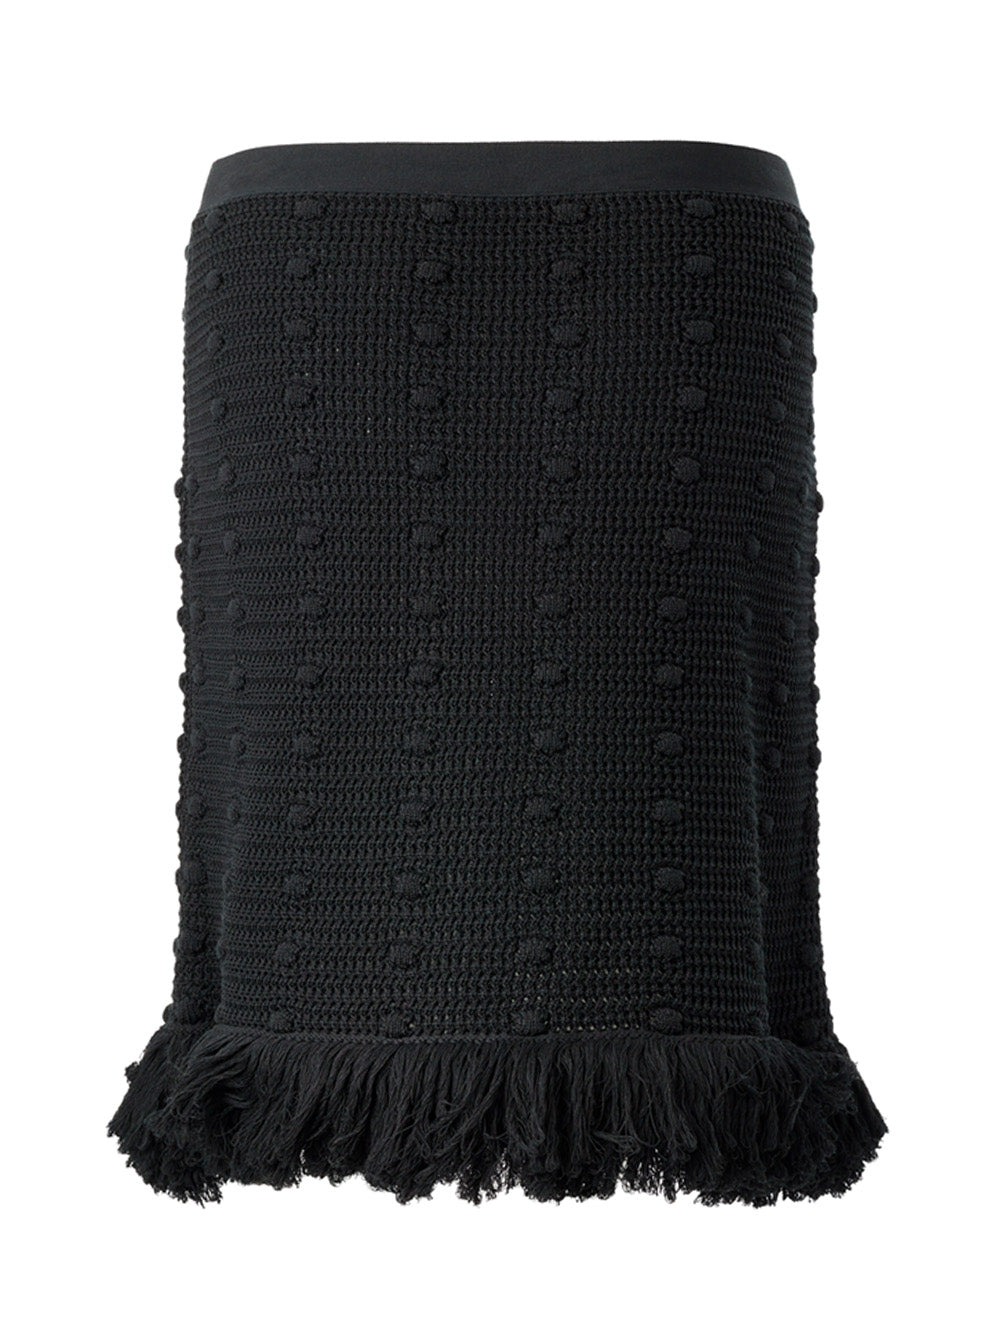 Bottega Veneta Knitted Black Skirt